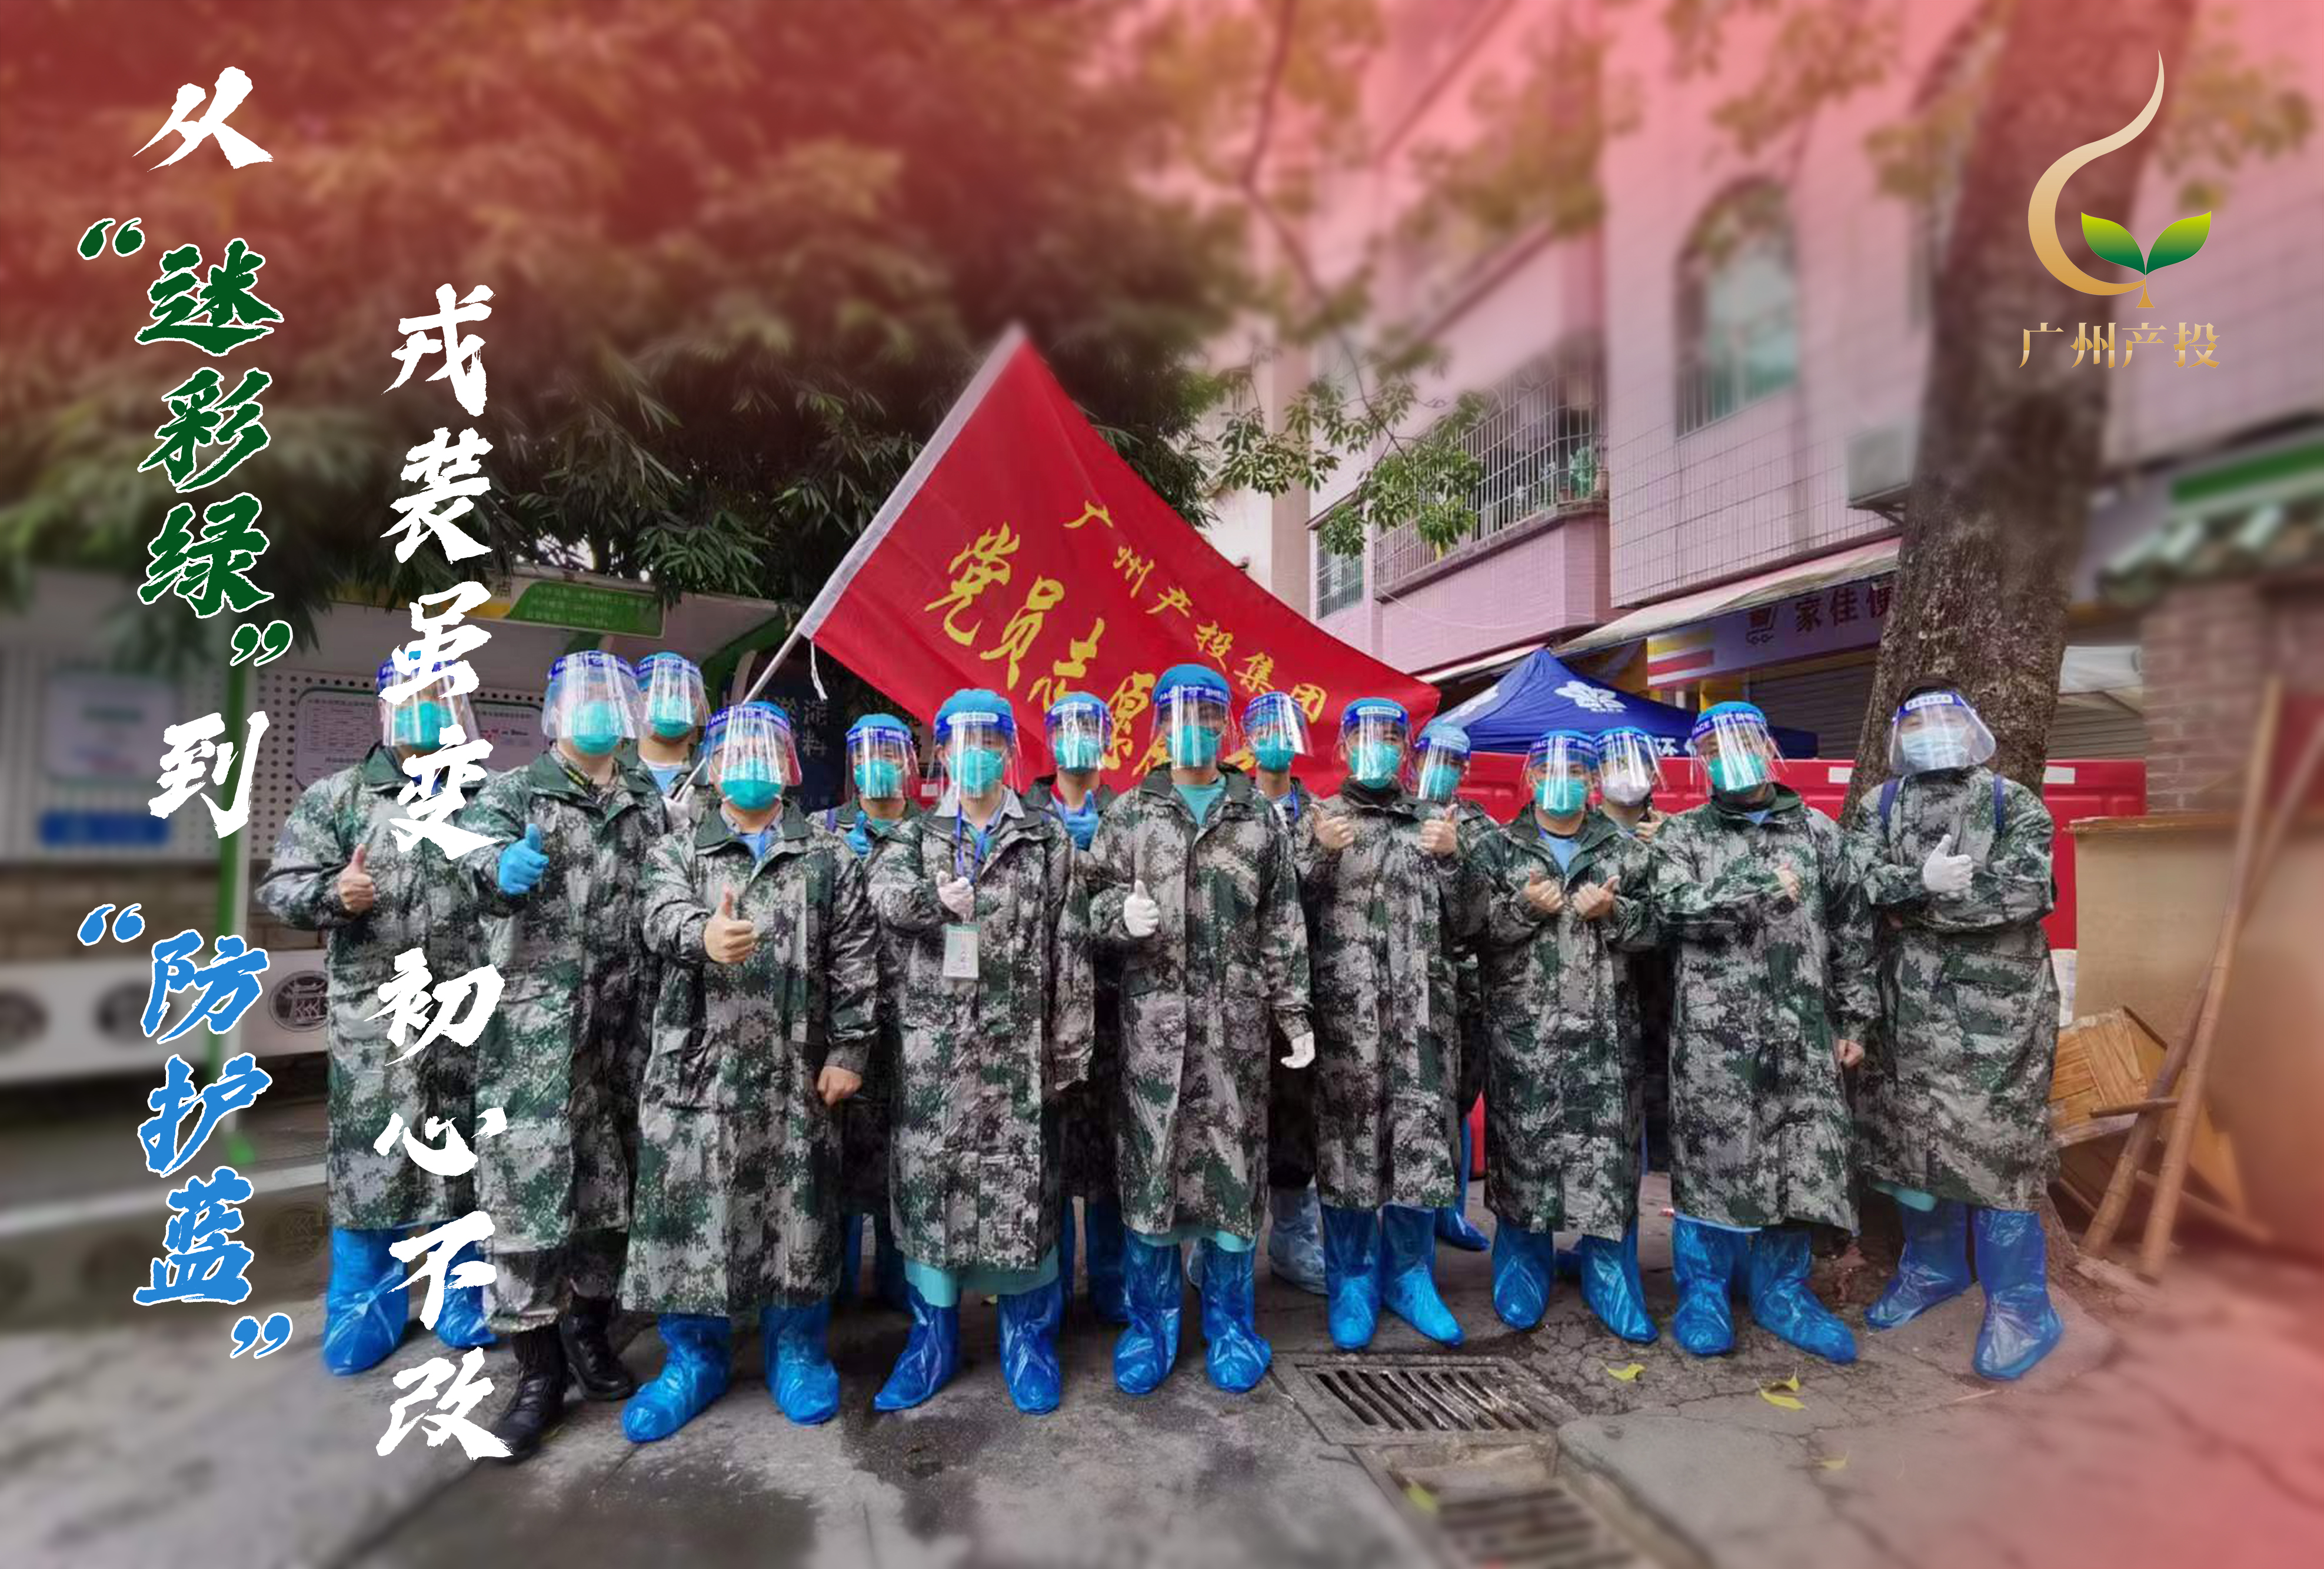 从“迷彩绿”到“防护蓝” 戎装虽变初心不改——广州产投集团民兵与志愿者在一线并肩抗疫